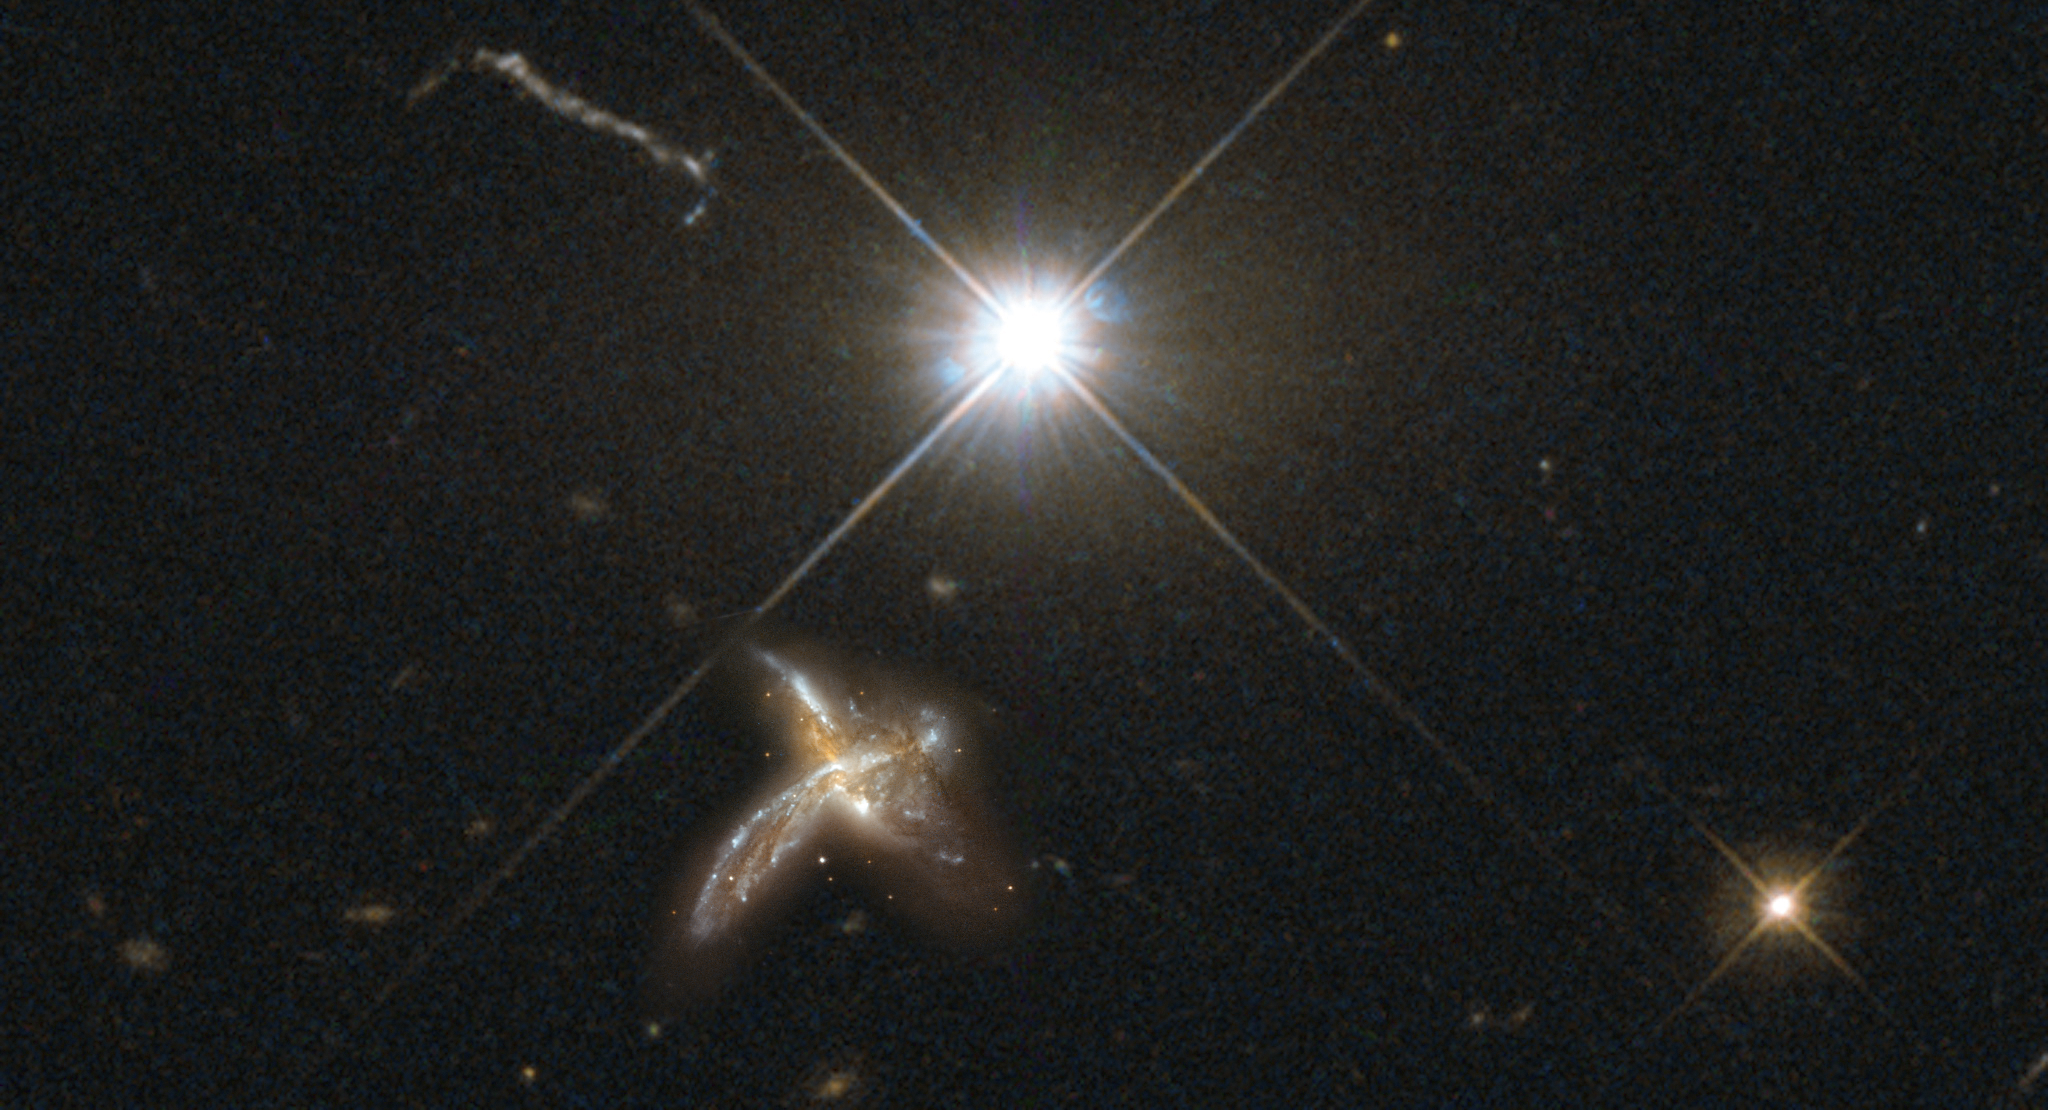 Die beobachteten Galaxien sind so weit entfernt, dass derzeit keine detaillierten Bilder möglich sind. Diese Bildmontage gibt einen Eindruck, wie eine Nachbargalaxie neben einem Quasar aussehen könnte.